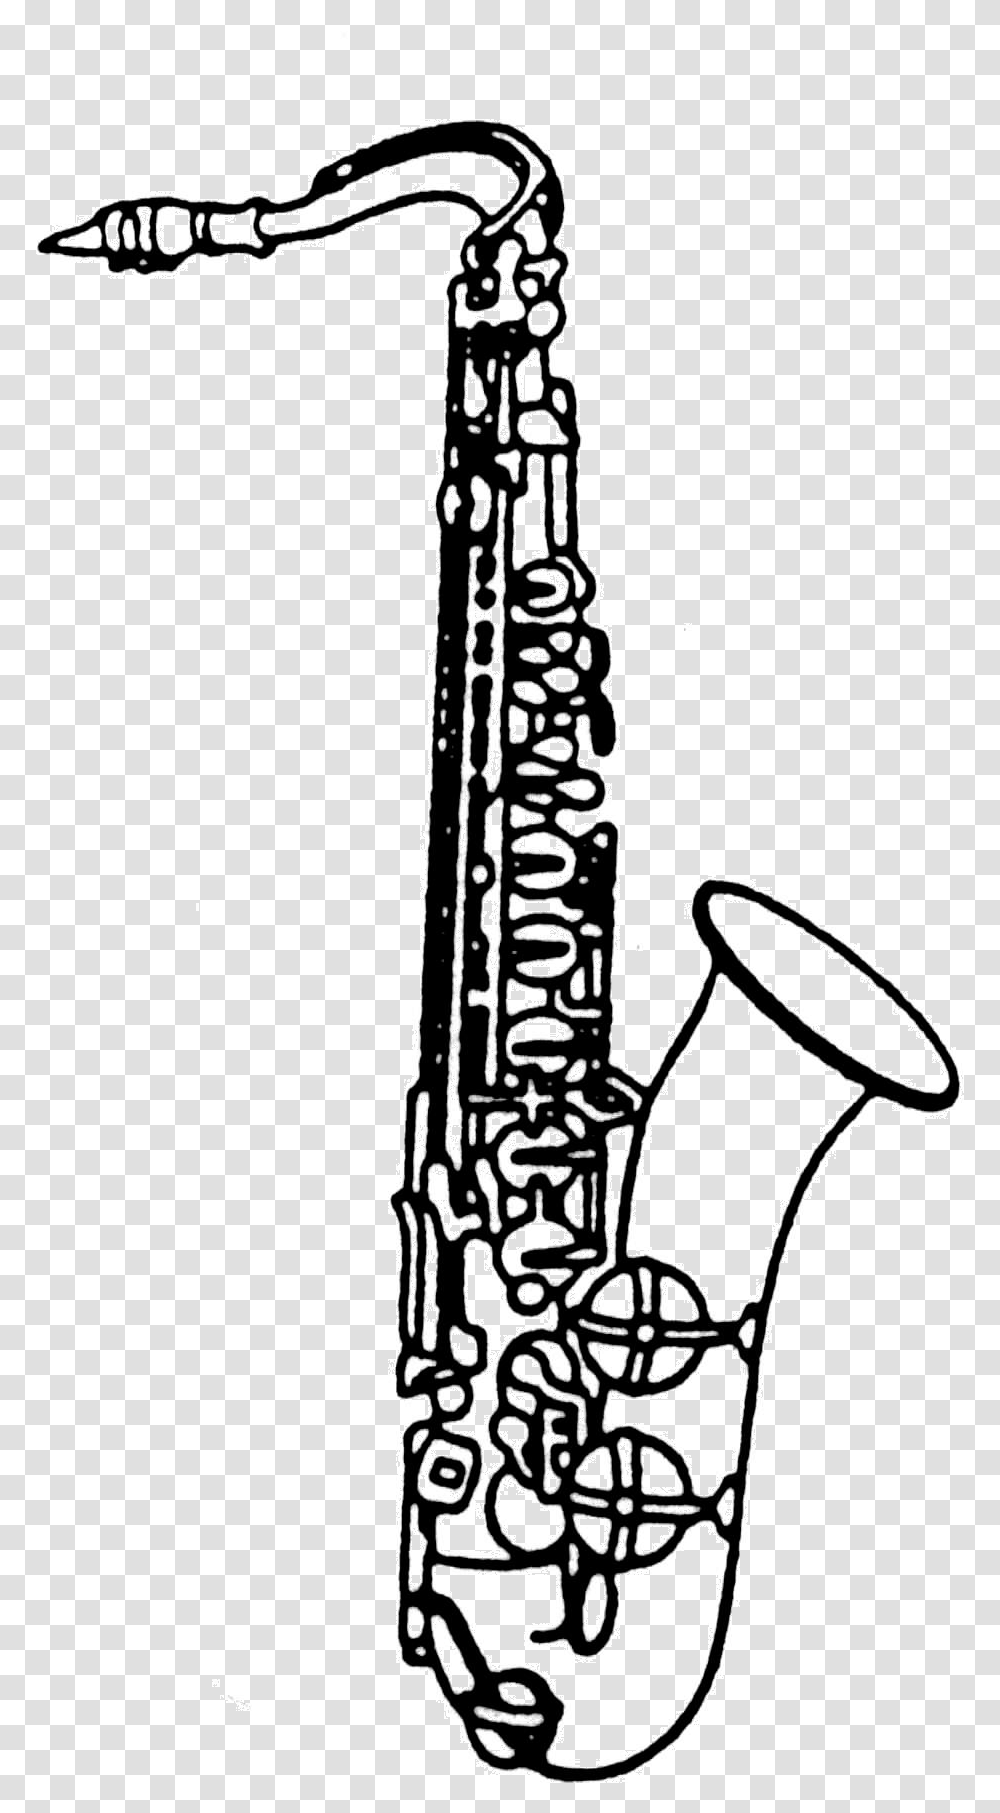 White Saxophone Alto Saxophone Clip Art, Leisure Activities, Musical Instrument Transparent Png